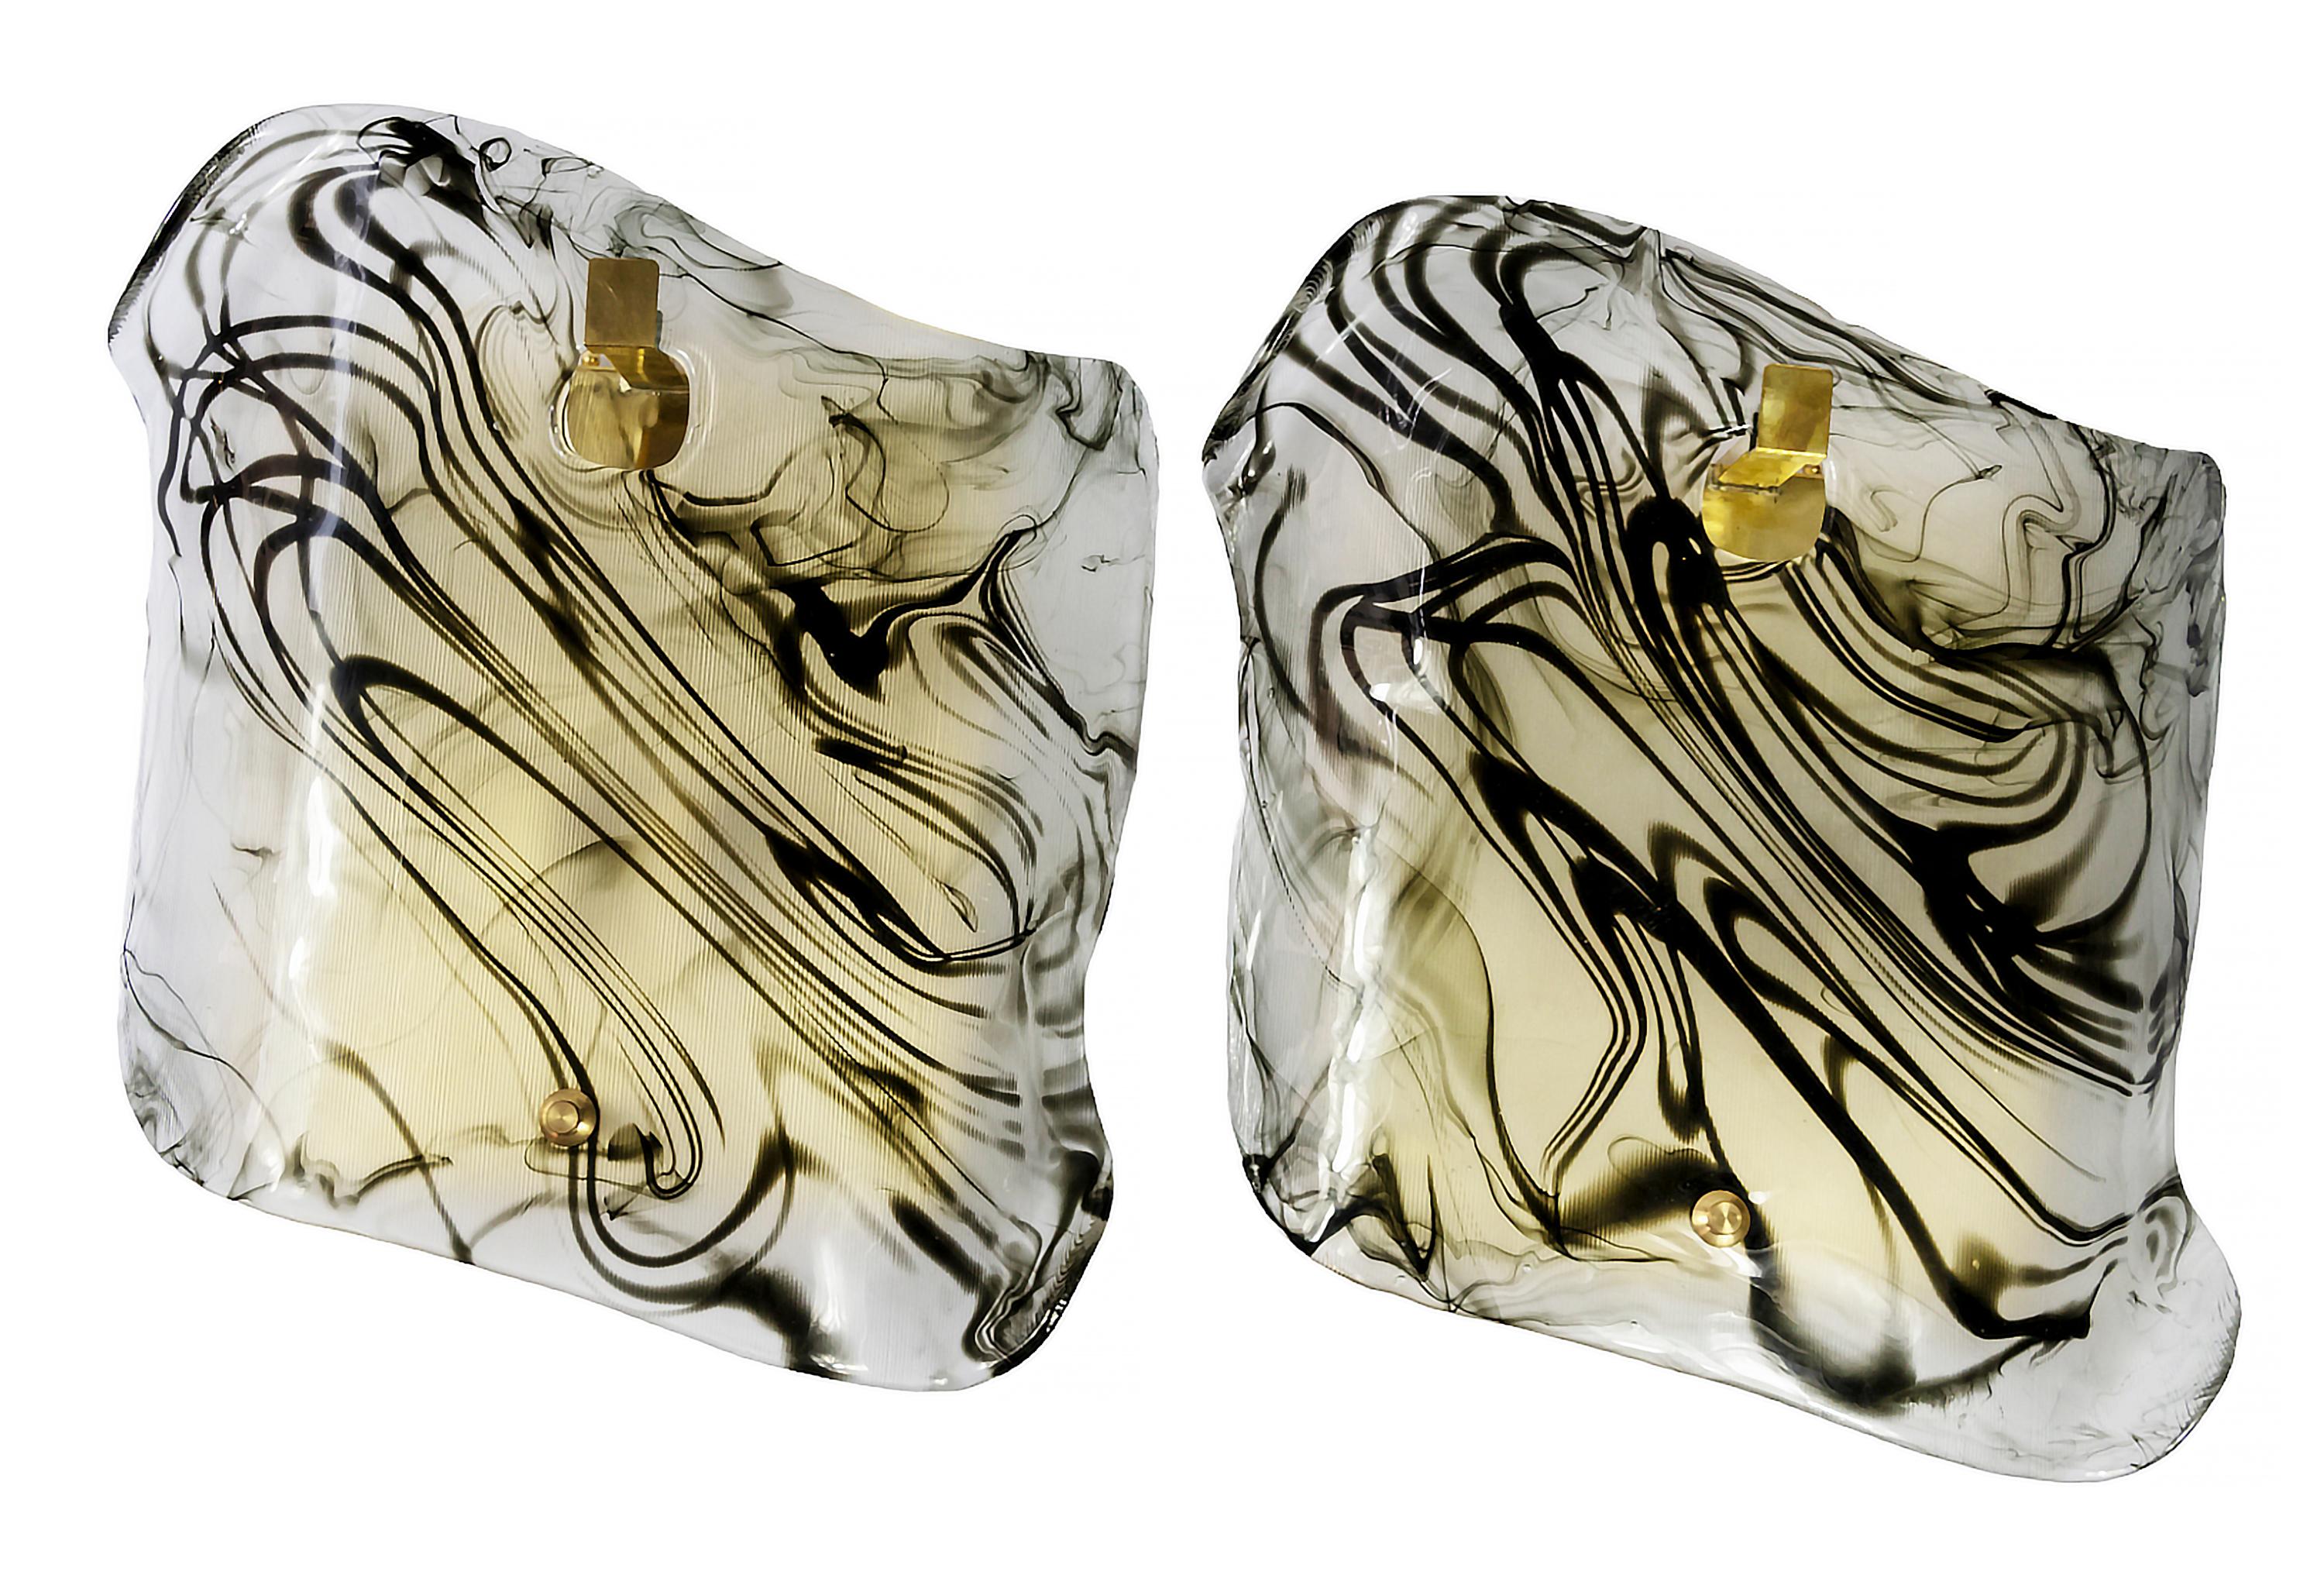 Ein Paar italienische Wandleuchten aus Messing mit handgefertigtem Murano-Glas. Jedes Murano-Glas ist einzigartig, halbtransparent, hell elfenbeinweiß und dunkelbraun/schwarz.
Glühbirnen sind E14, 2 Stück pro Stück.
Sehr solide und schwer.